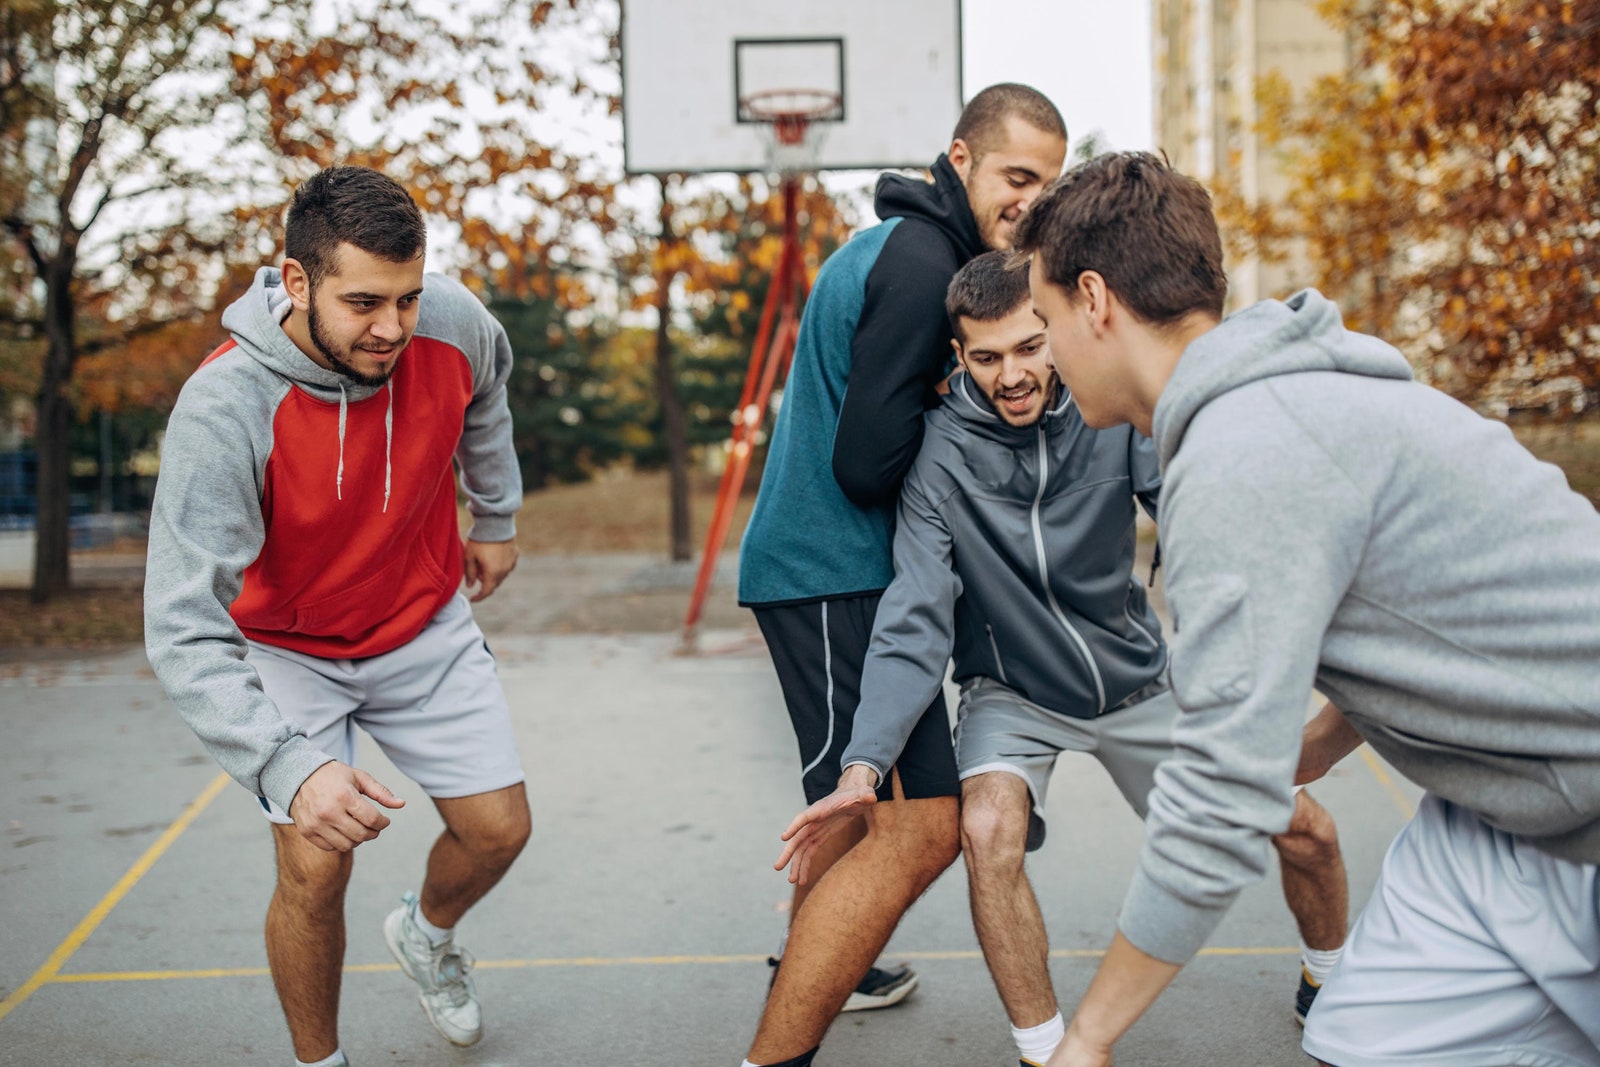 Grupo de amigos jugando baloncesto practicando actividad física.